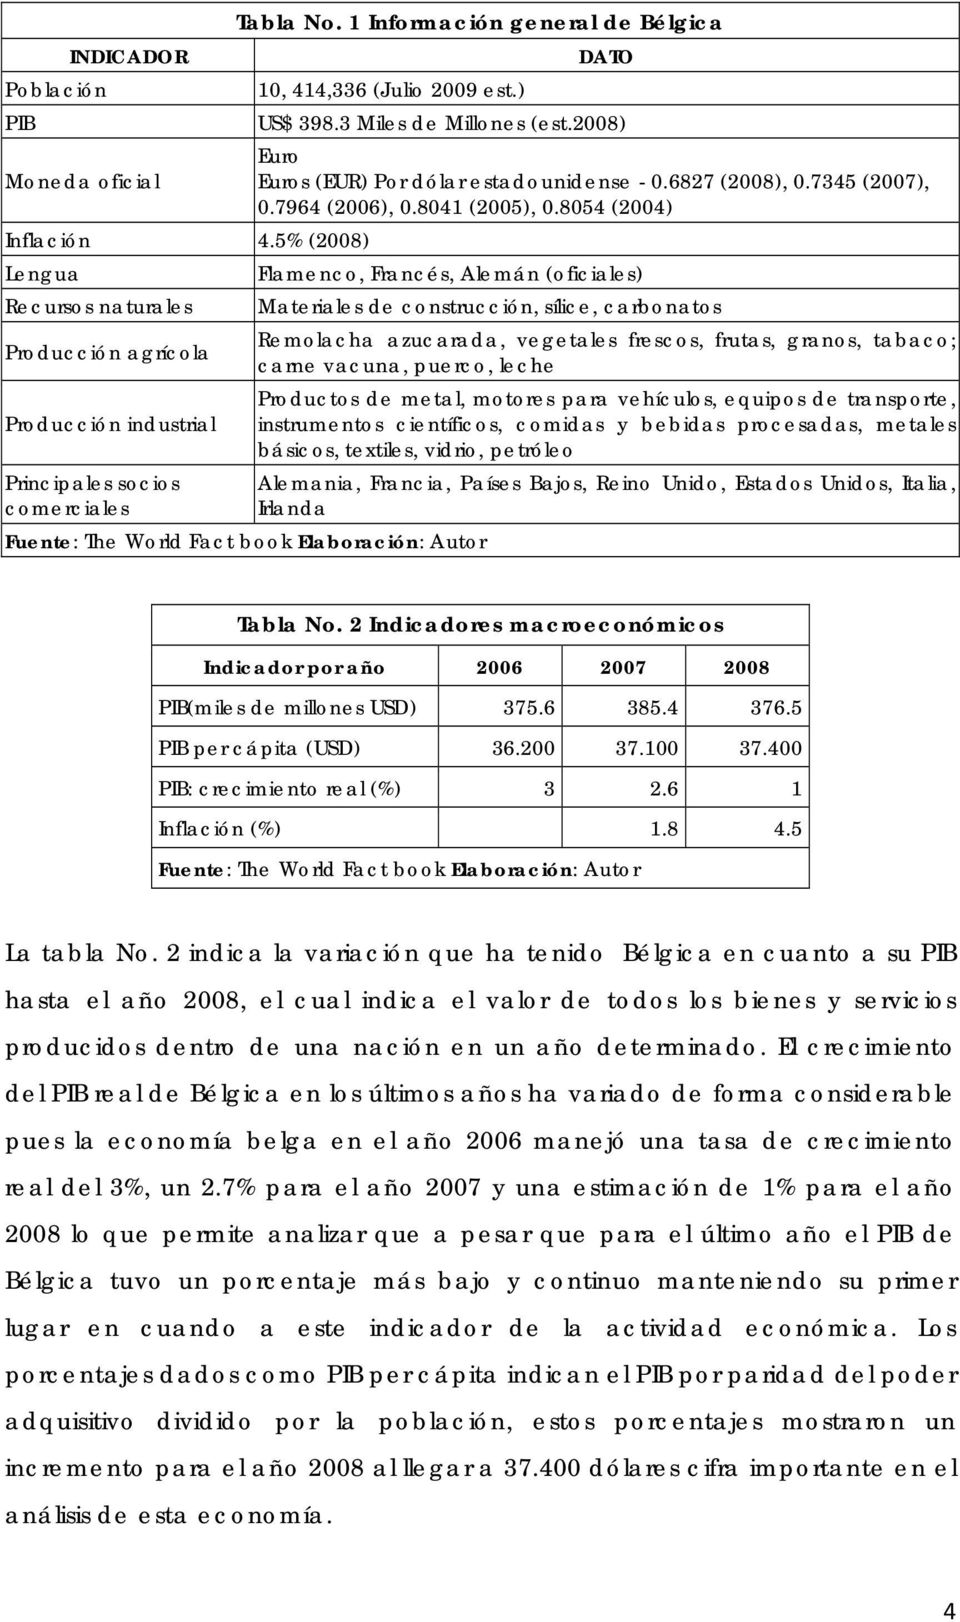 5% (2008) Lengua Flamenco, Francés, Alemán (oficiales) Recursos naturales Materiales de construcción, sílice, carbonatos Remolacha azucarada, vegetales frescos, frutas, granos, tabaco; Producción